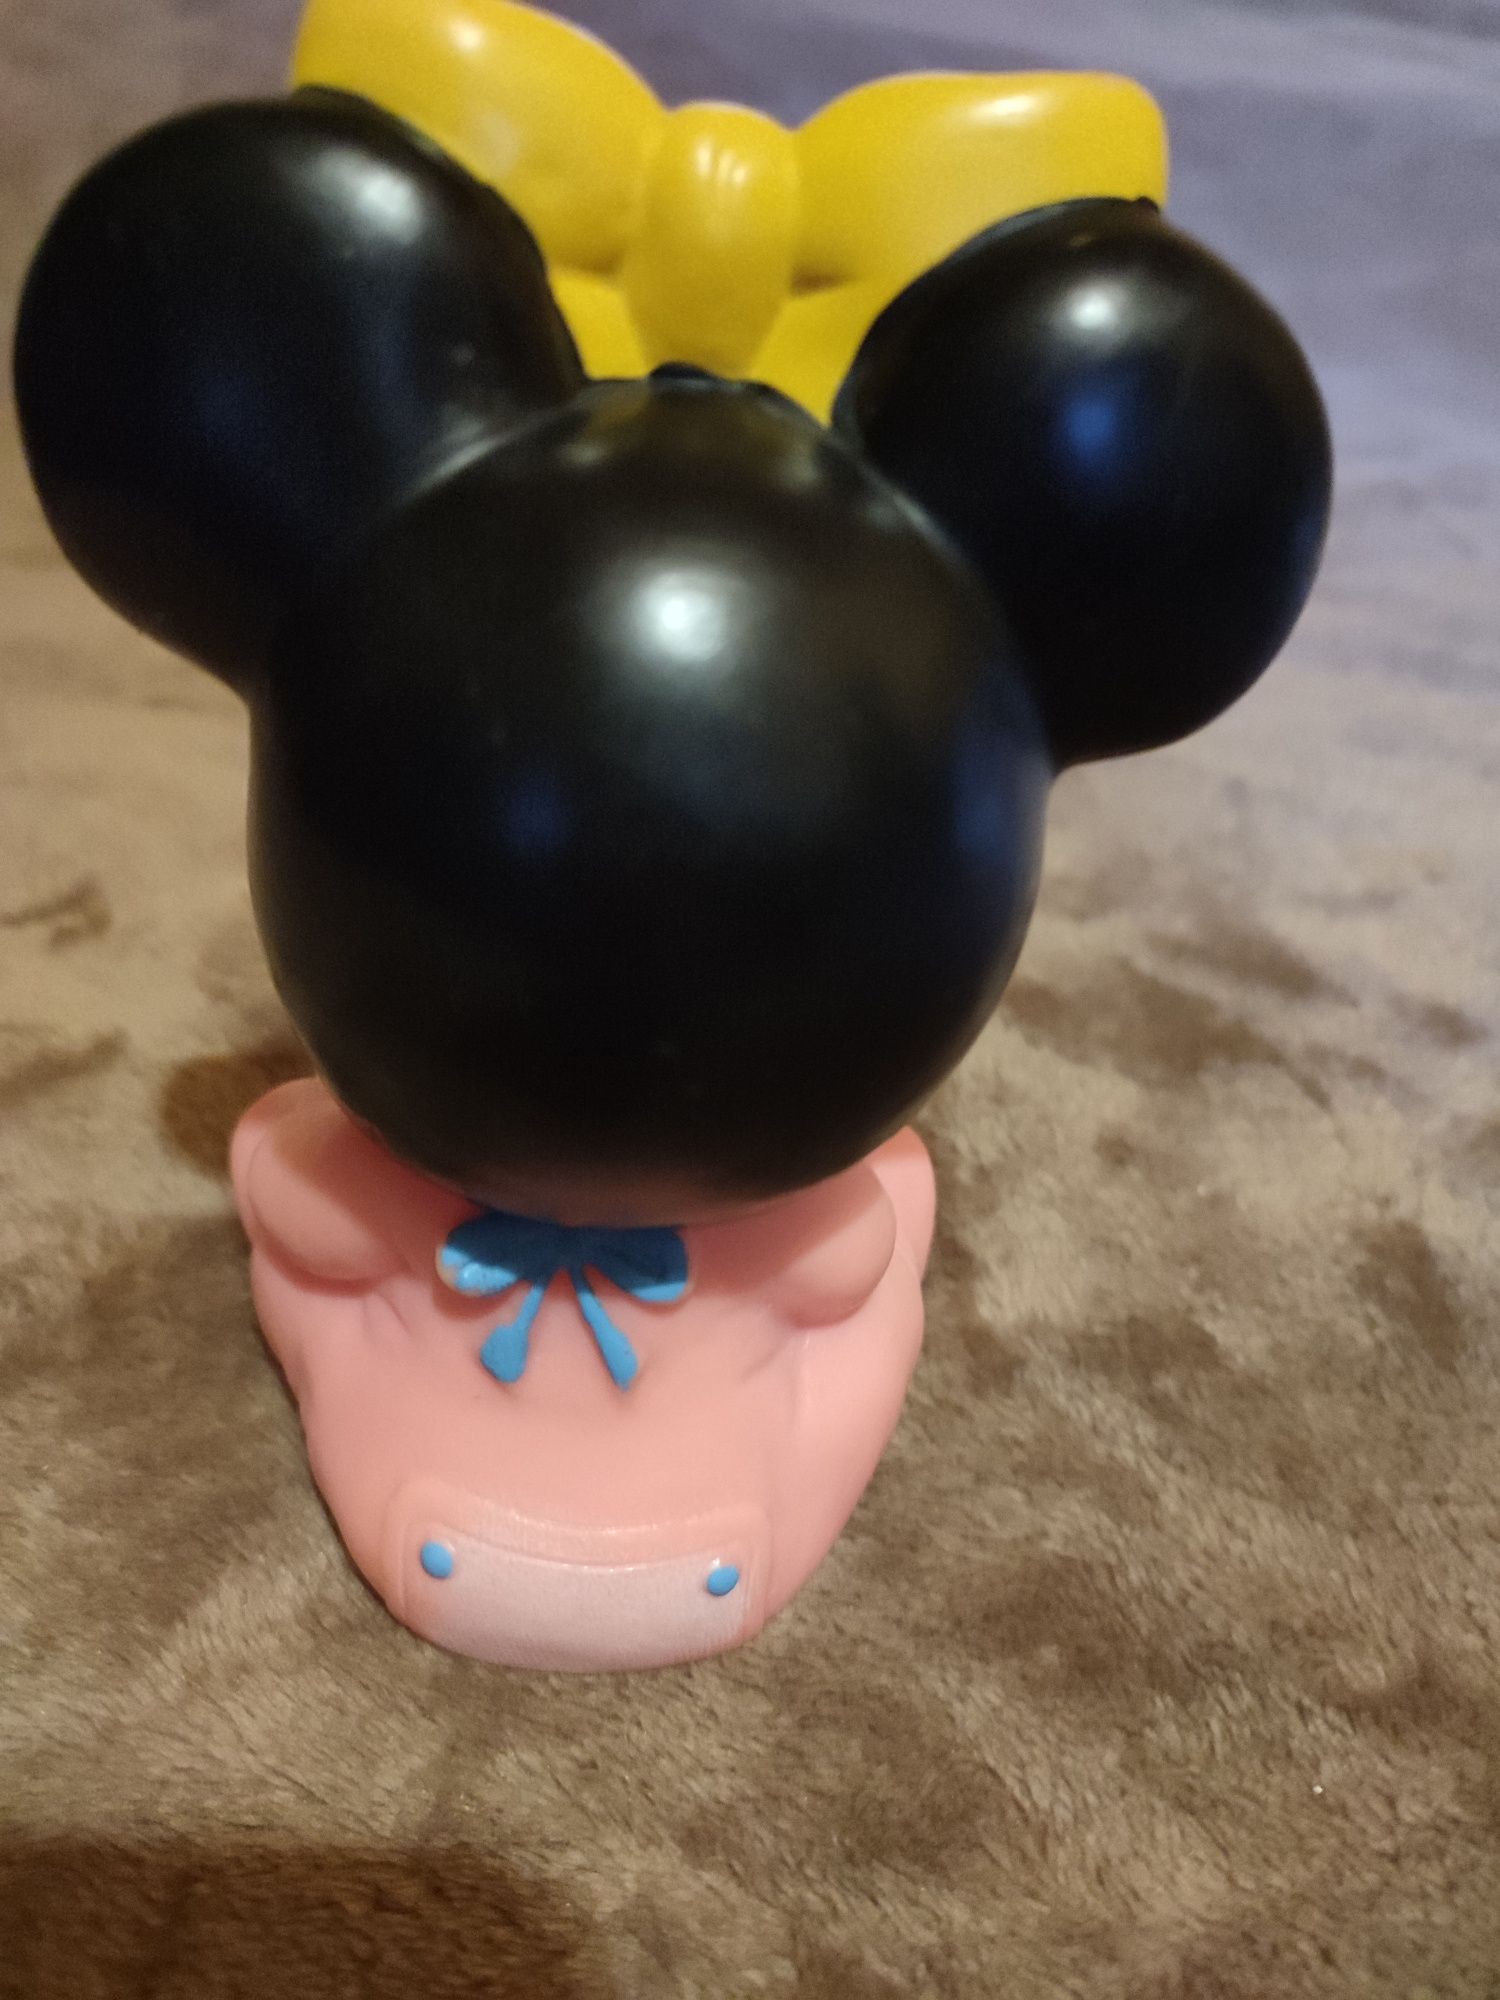 Myszka Miki Disney animacja PRL